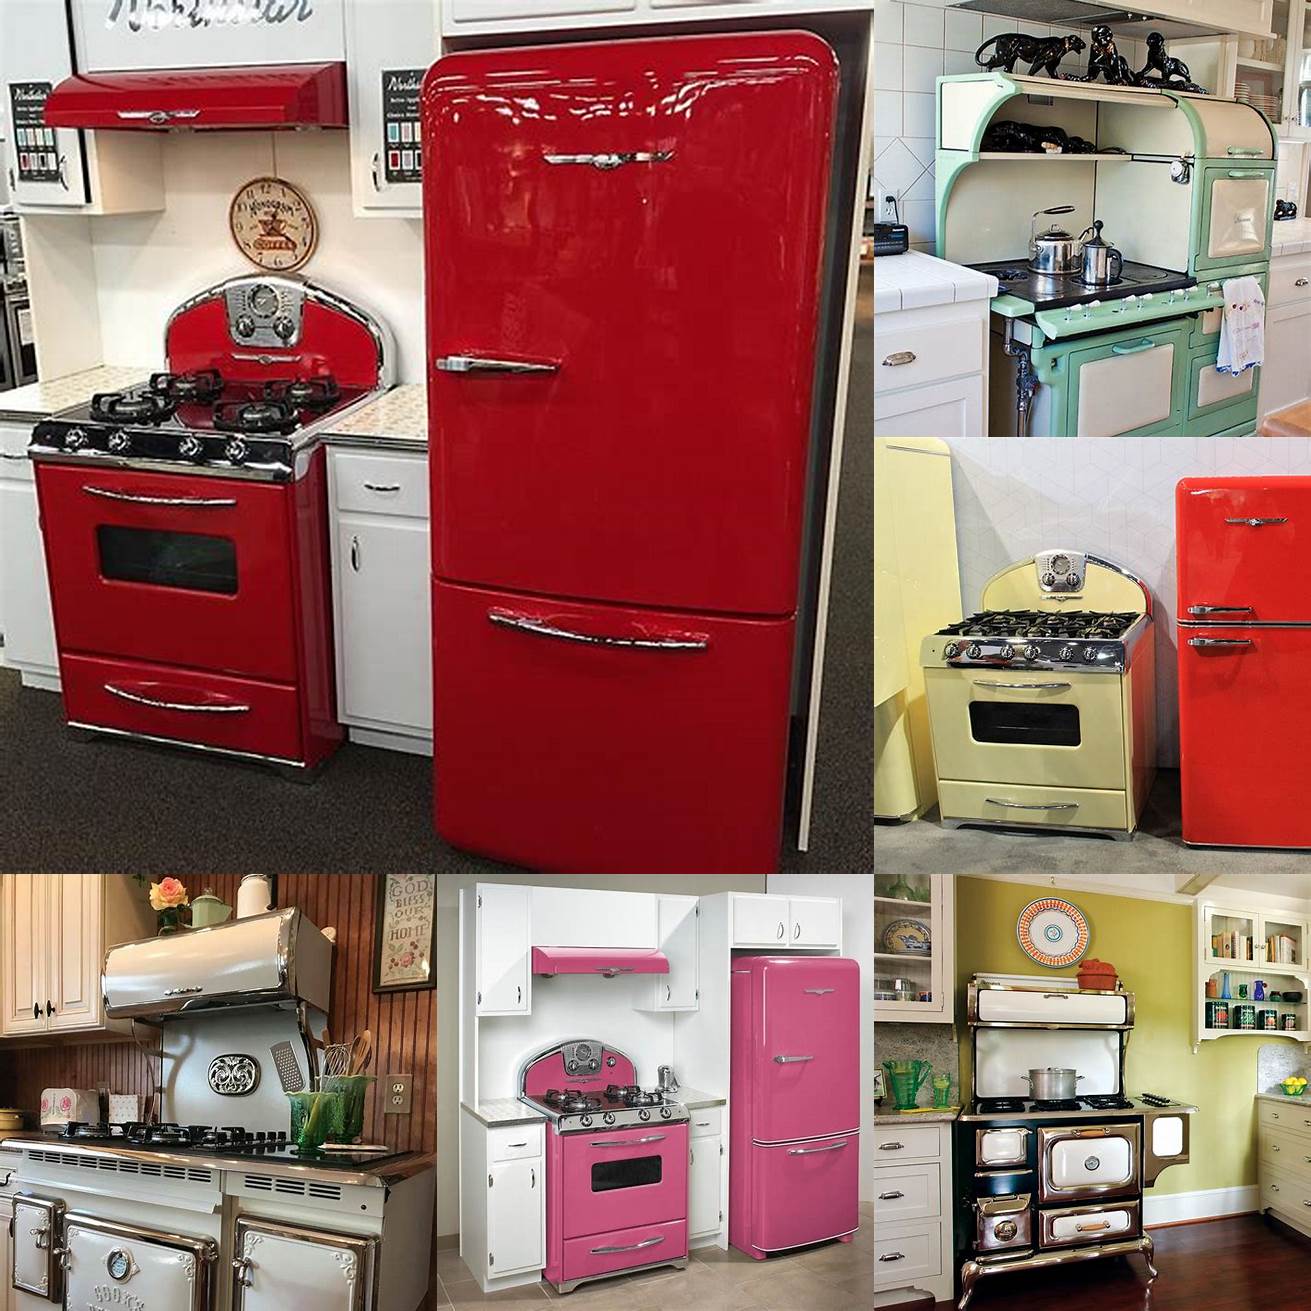 Vintage-style appliances